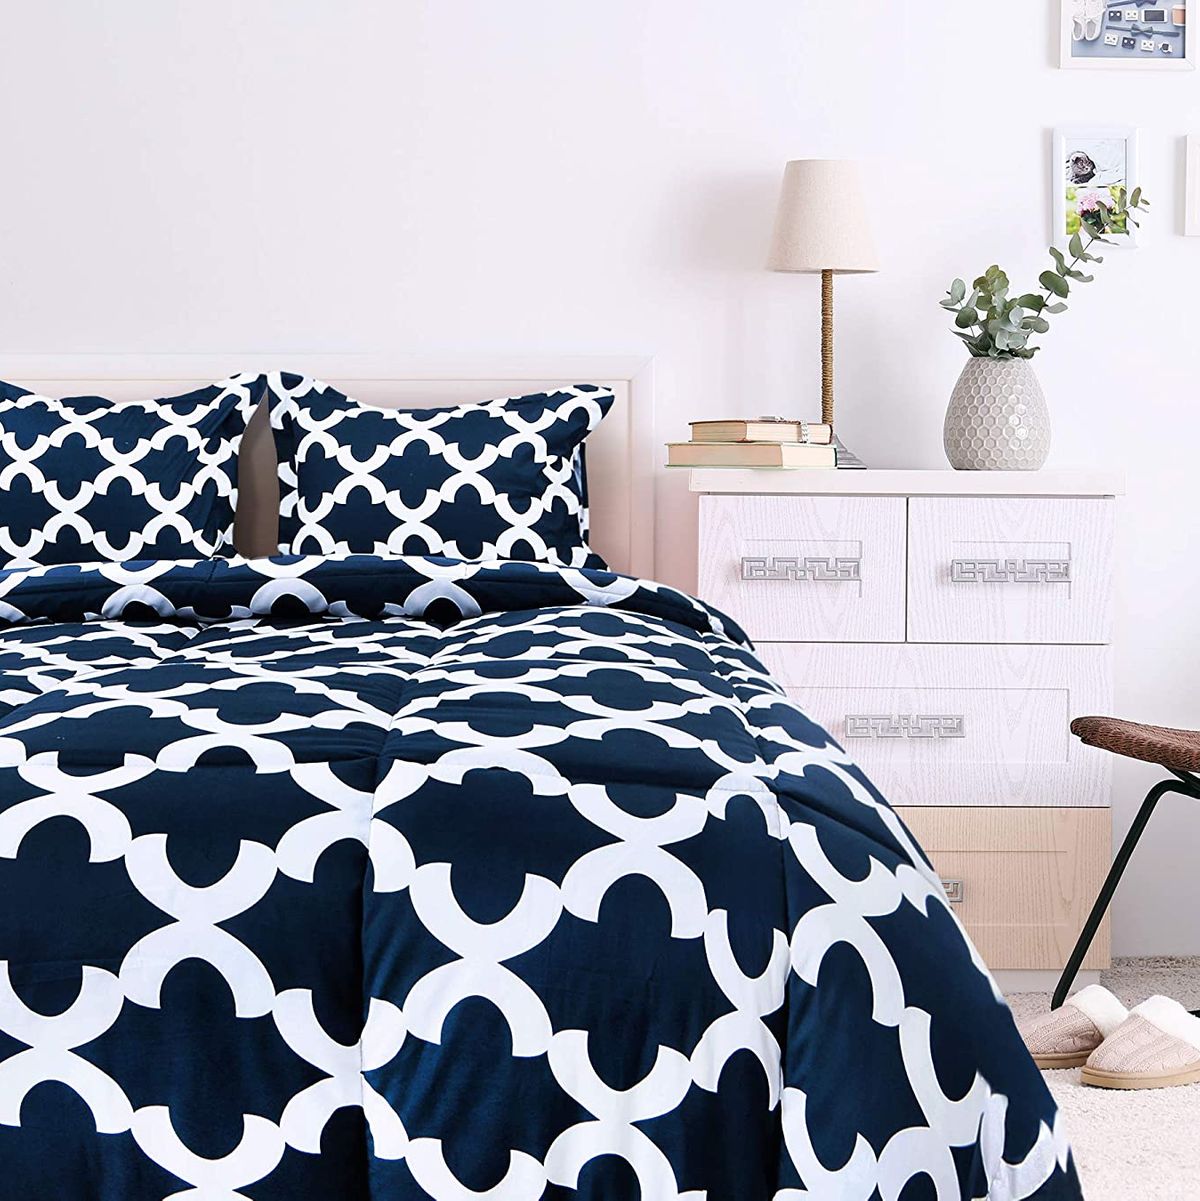 17 Best Comforters On 2021 The, Utopia Bedding Comforter Duvet Insert Review